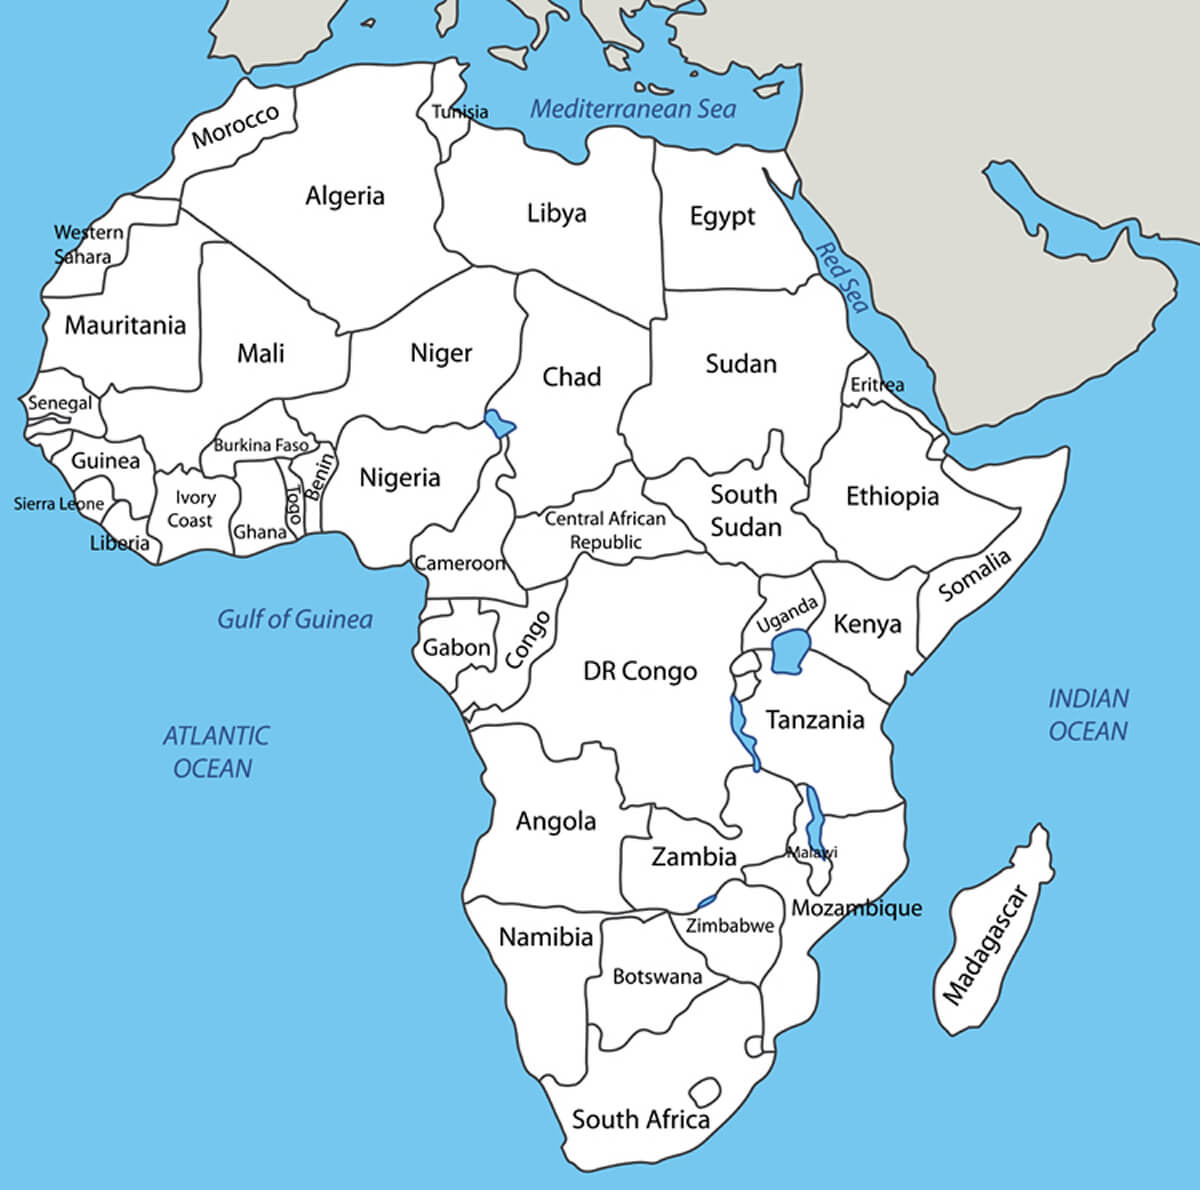 Afrika vektör harita beyaz renkte